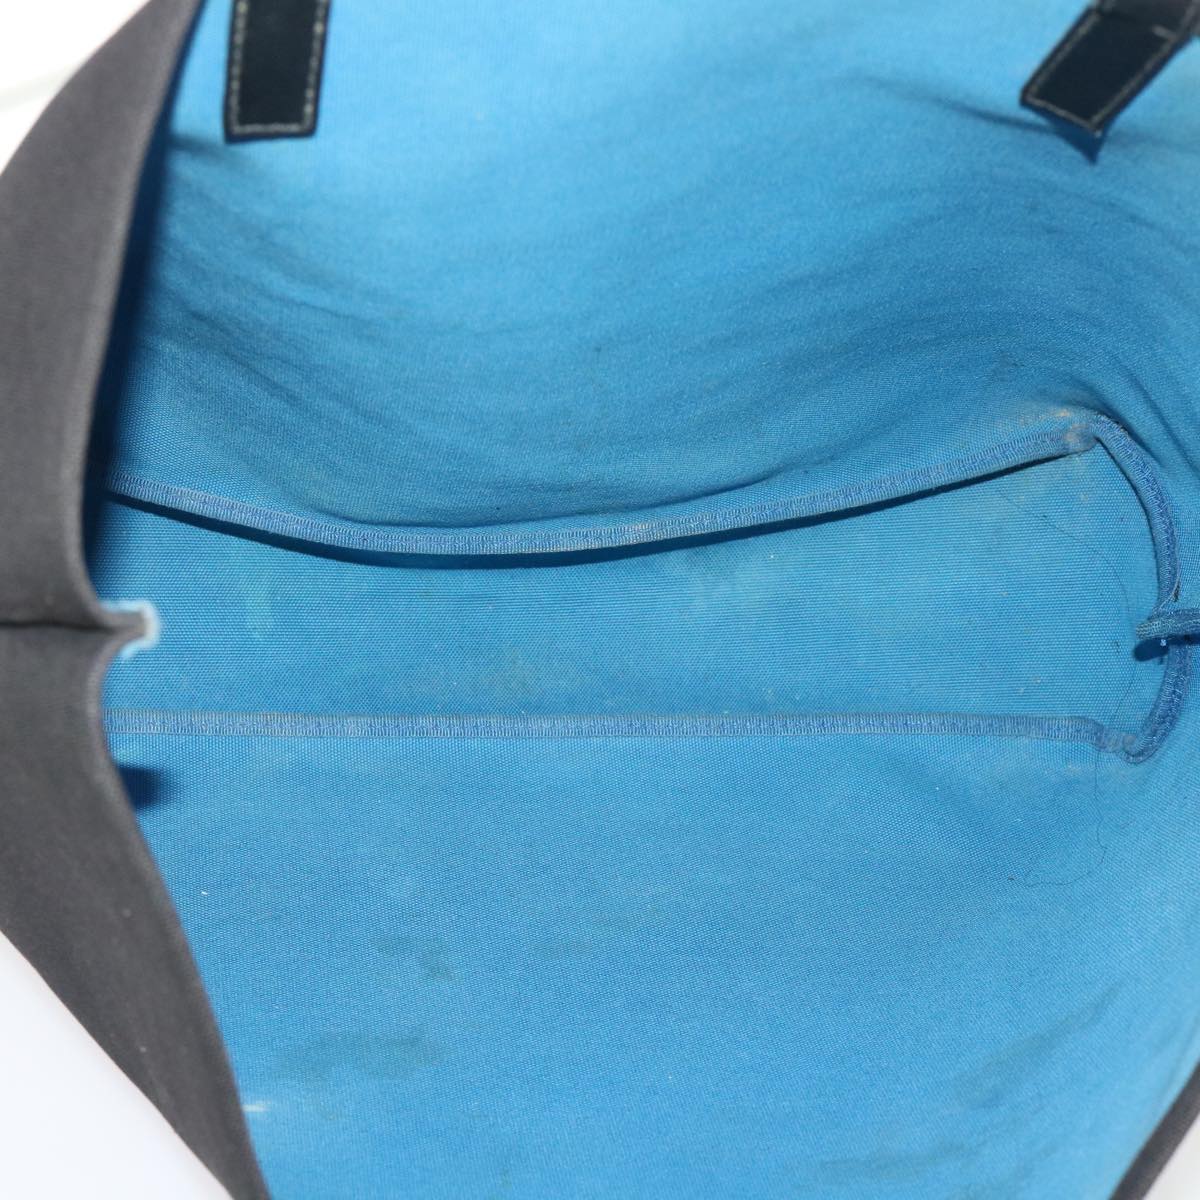 PRADA Tote Bag Canvas Black Blue Green Auth bs6645